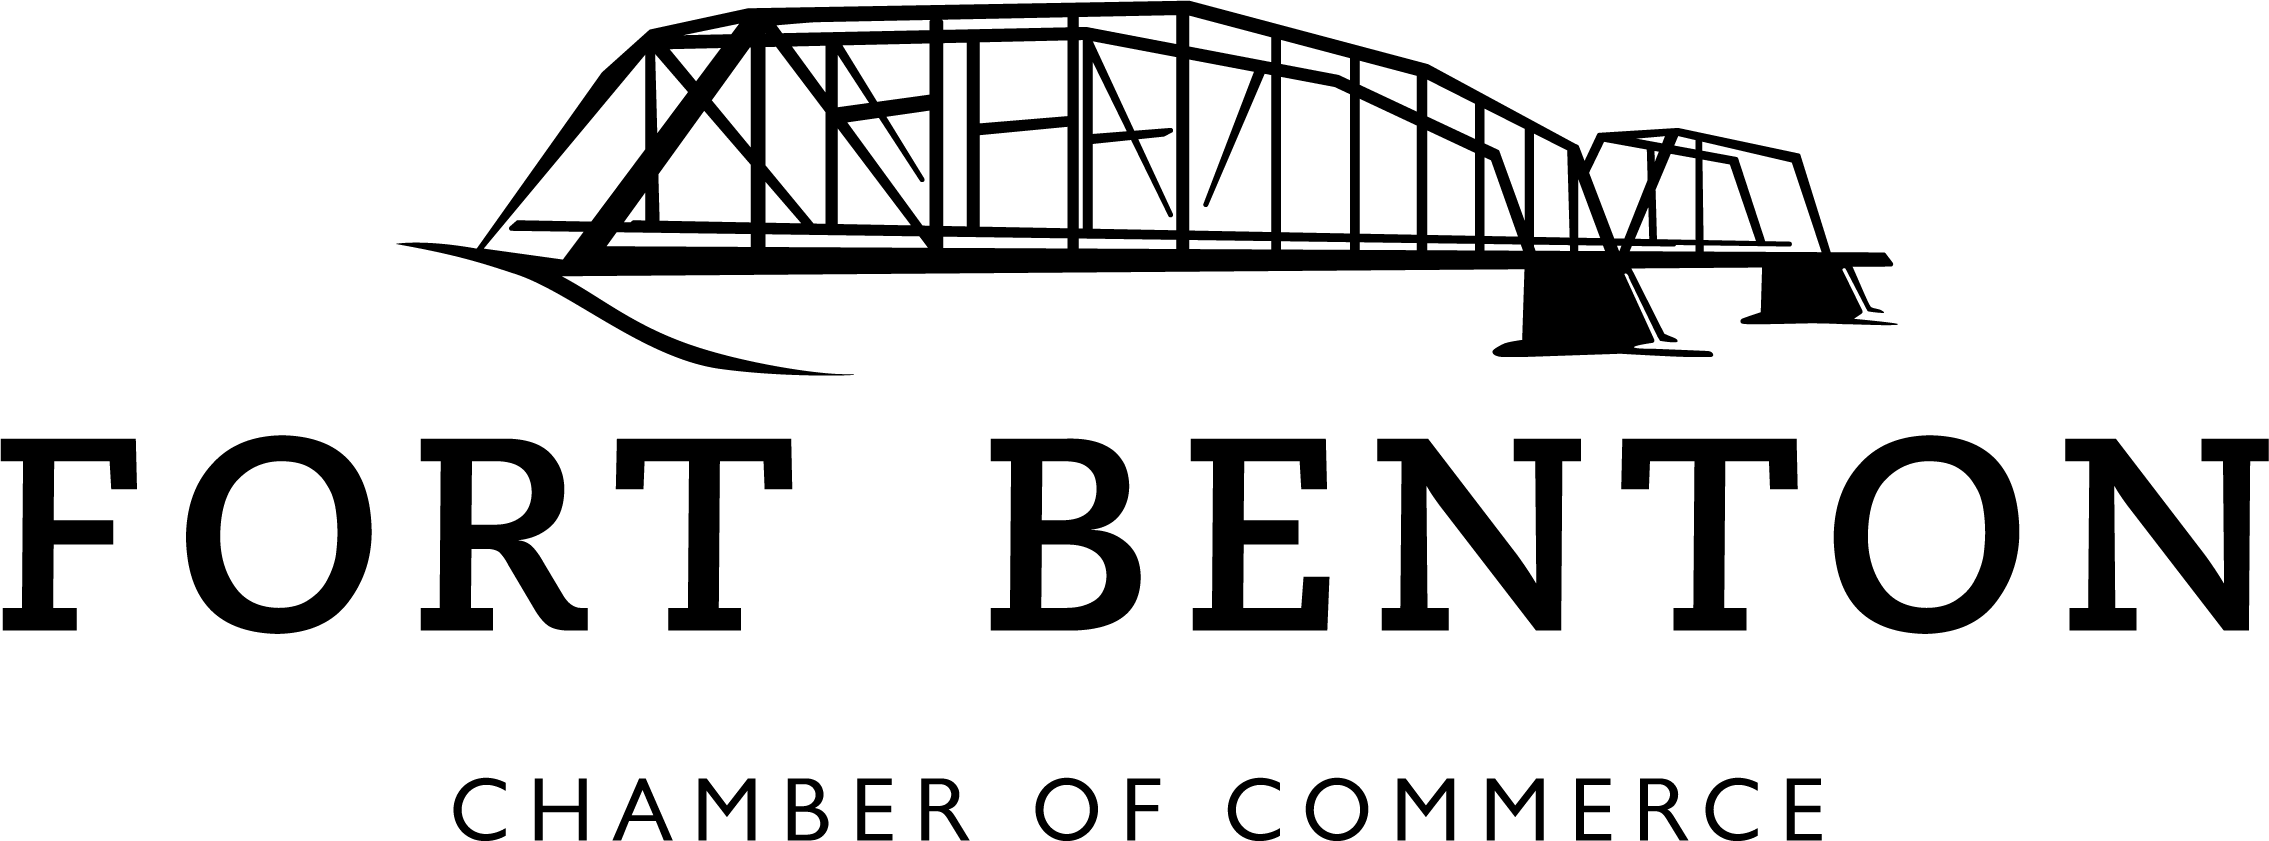 fbchamber logo.png